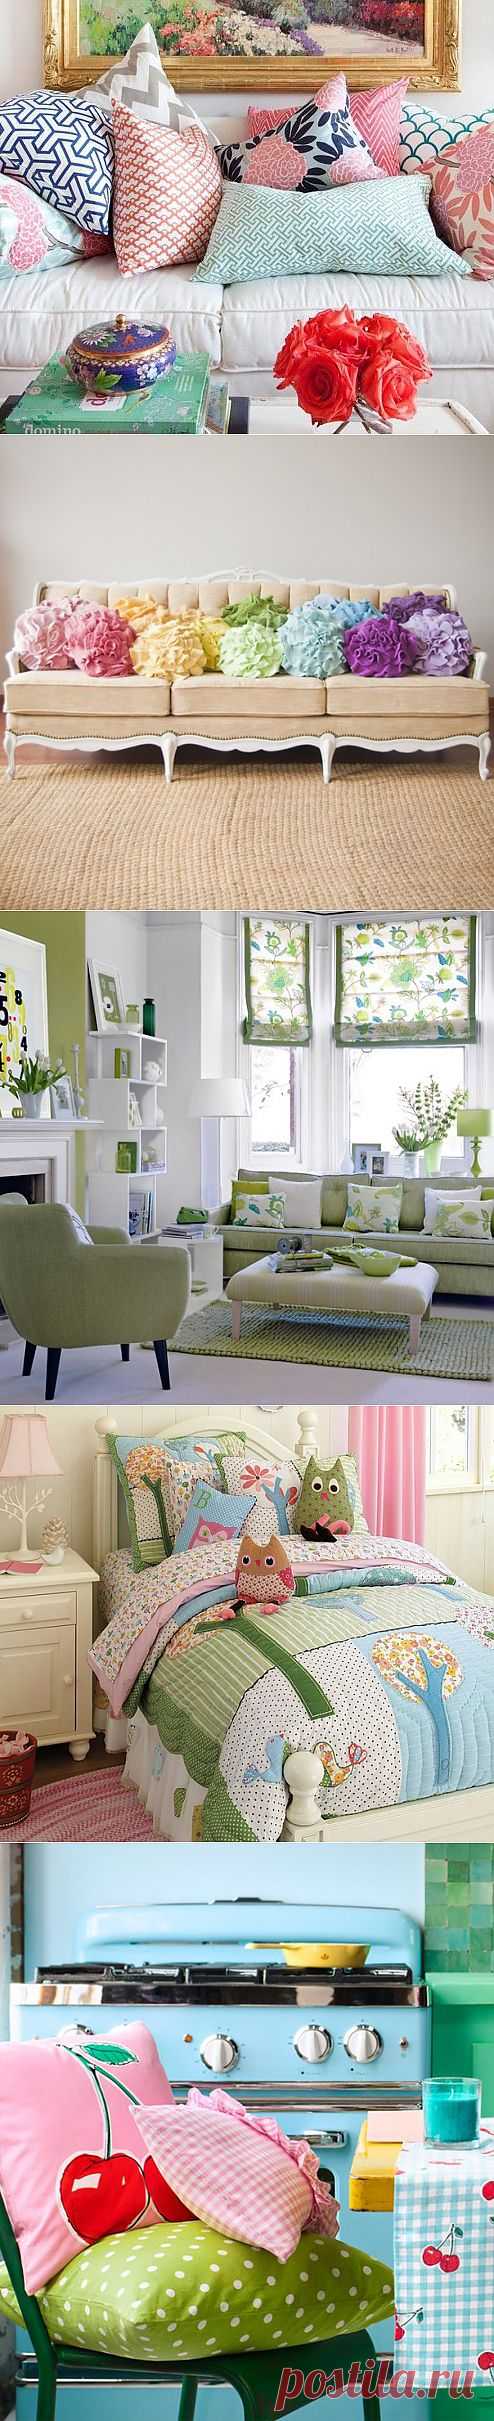 10 советов как украсить интерьер с помощью декоративных подушек | Дизайн интерьера | Декор своими руками